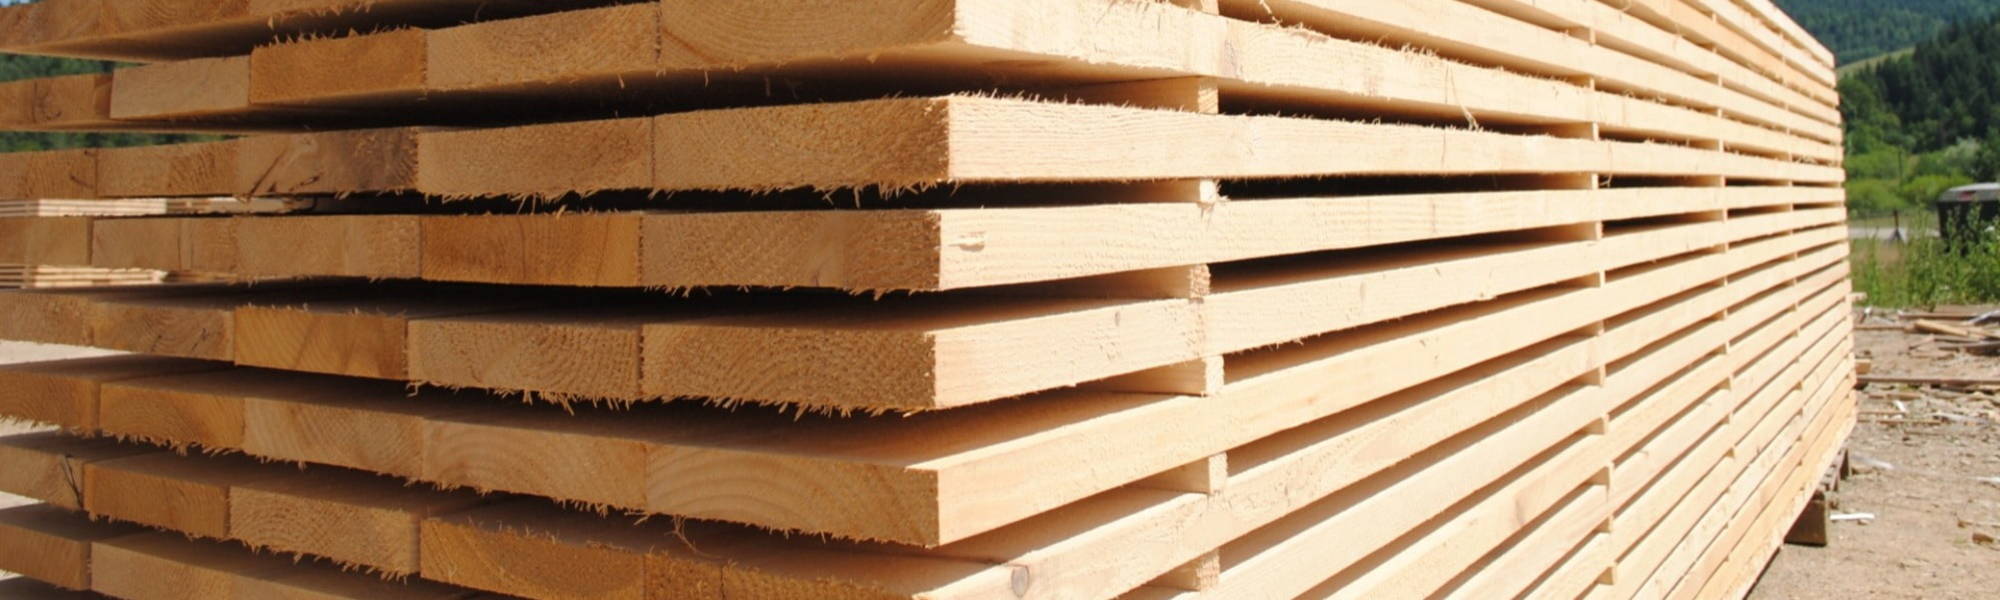 Timber Processing 